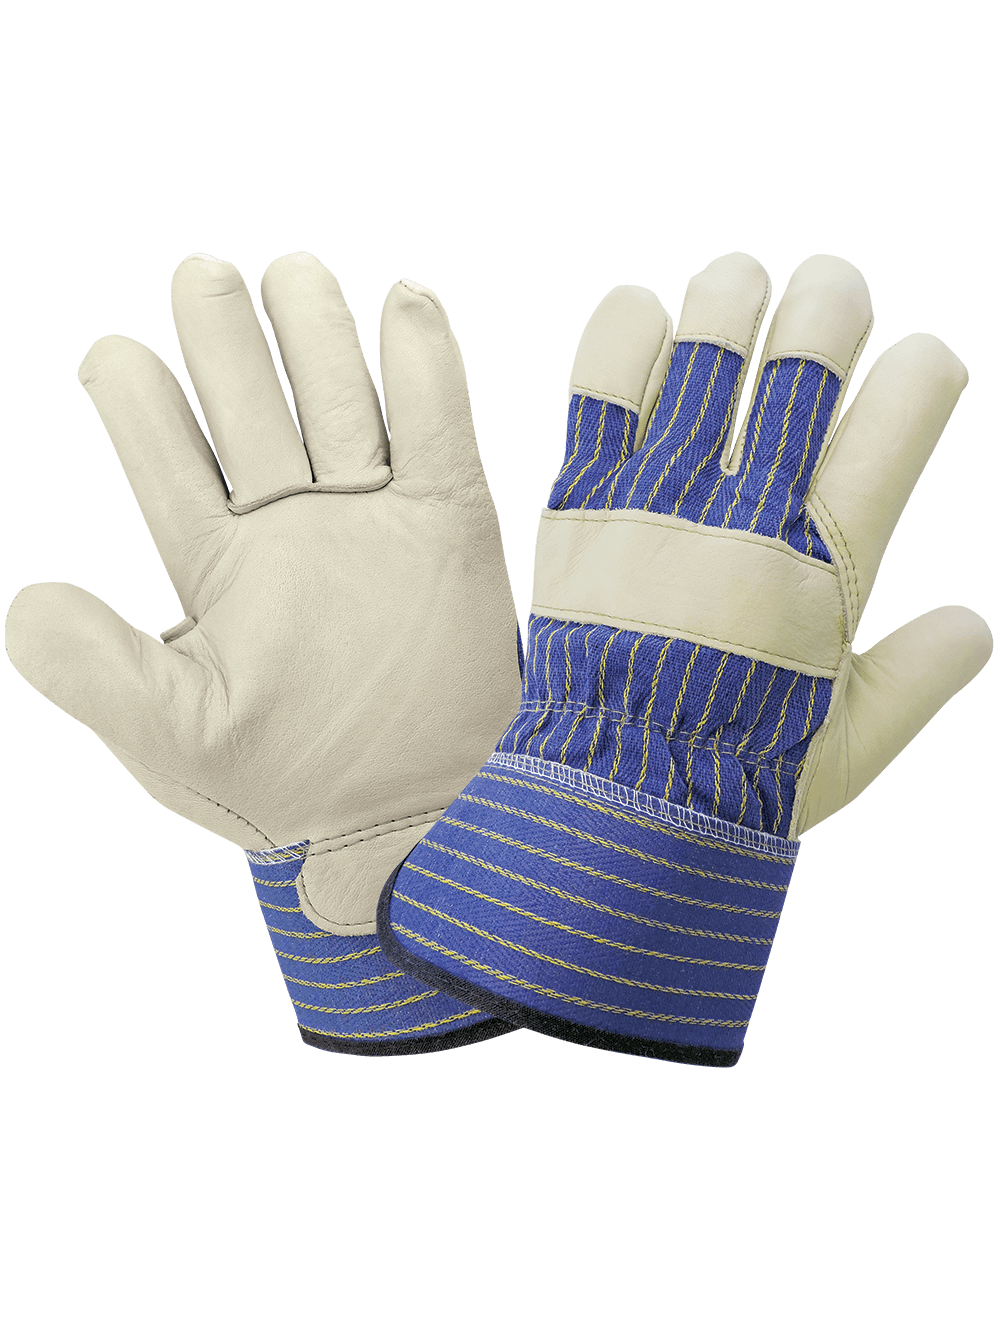 Premium Grain Cowhide Gunn Cut Leather Palm Gloves - 1900